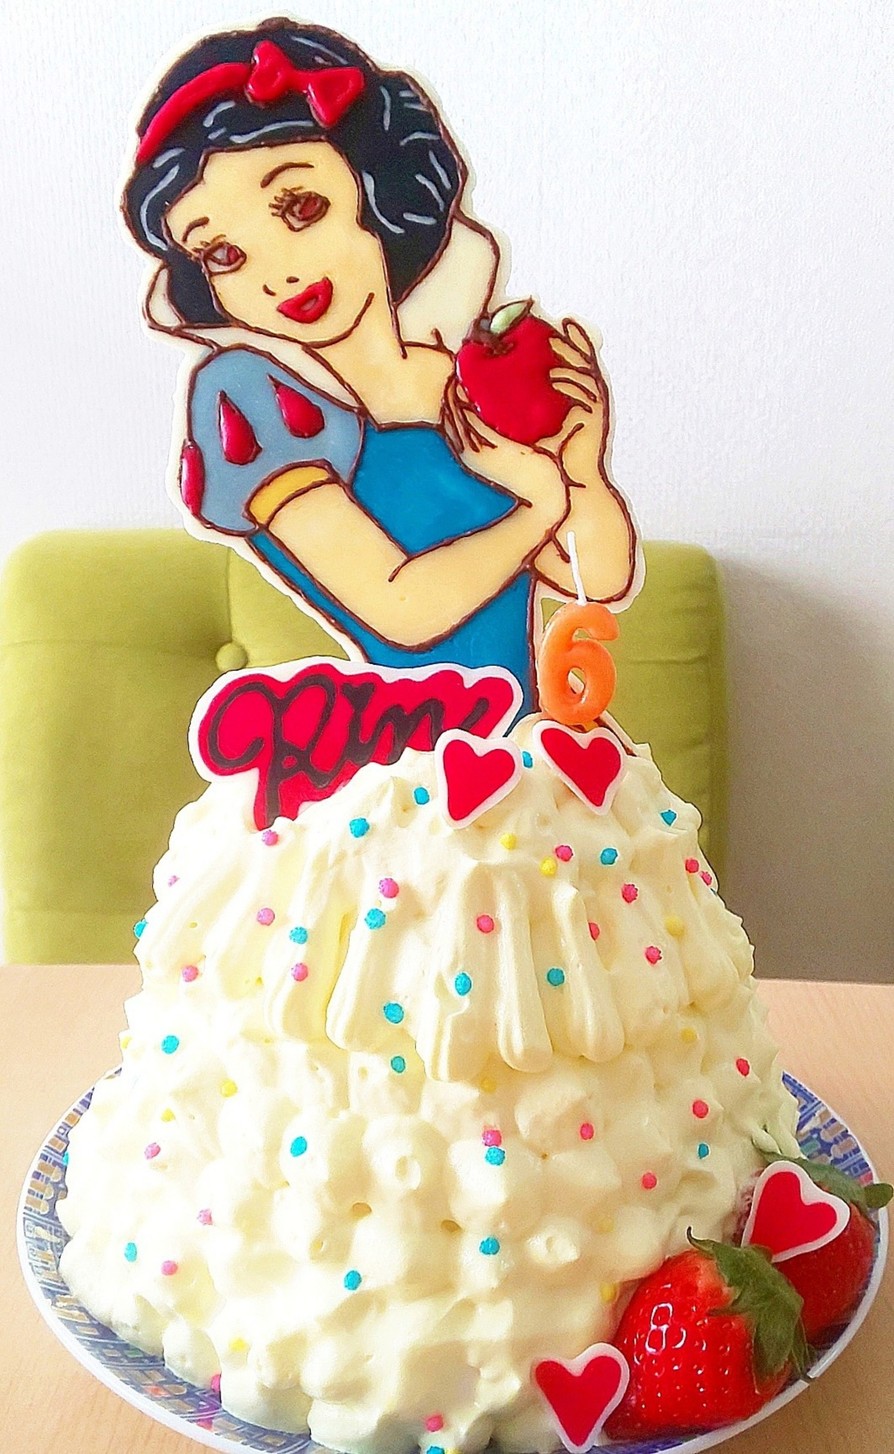 白雪姫 デコチョコ ドレスケーキの画像